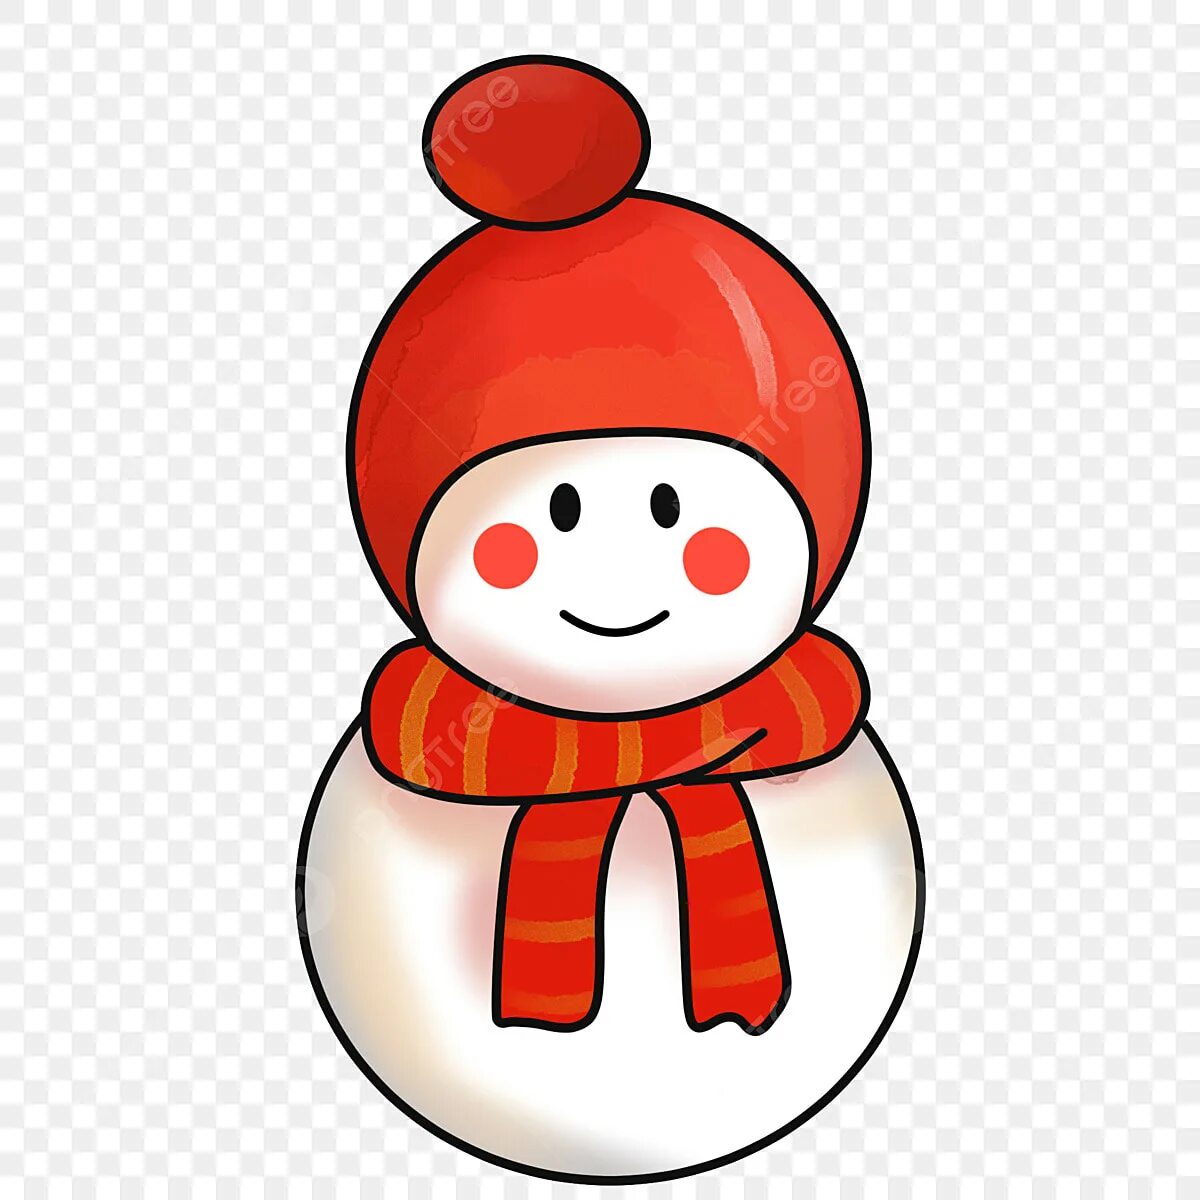 Снеговик без носа. Снеговик без морковки. Снеговик без носа для детей. Cytujdbrv,TP YJF. Картинка снеговики без морковок